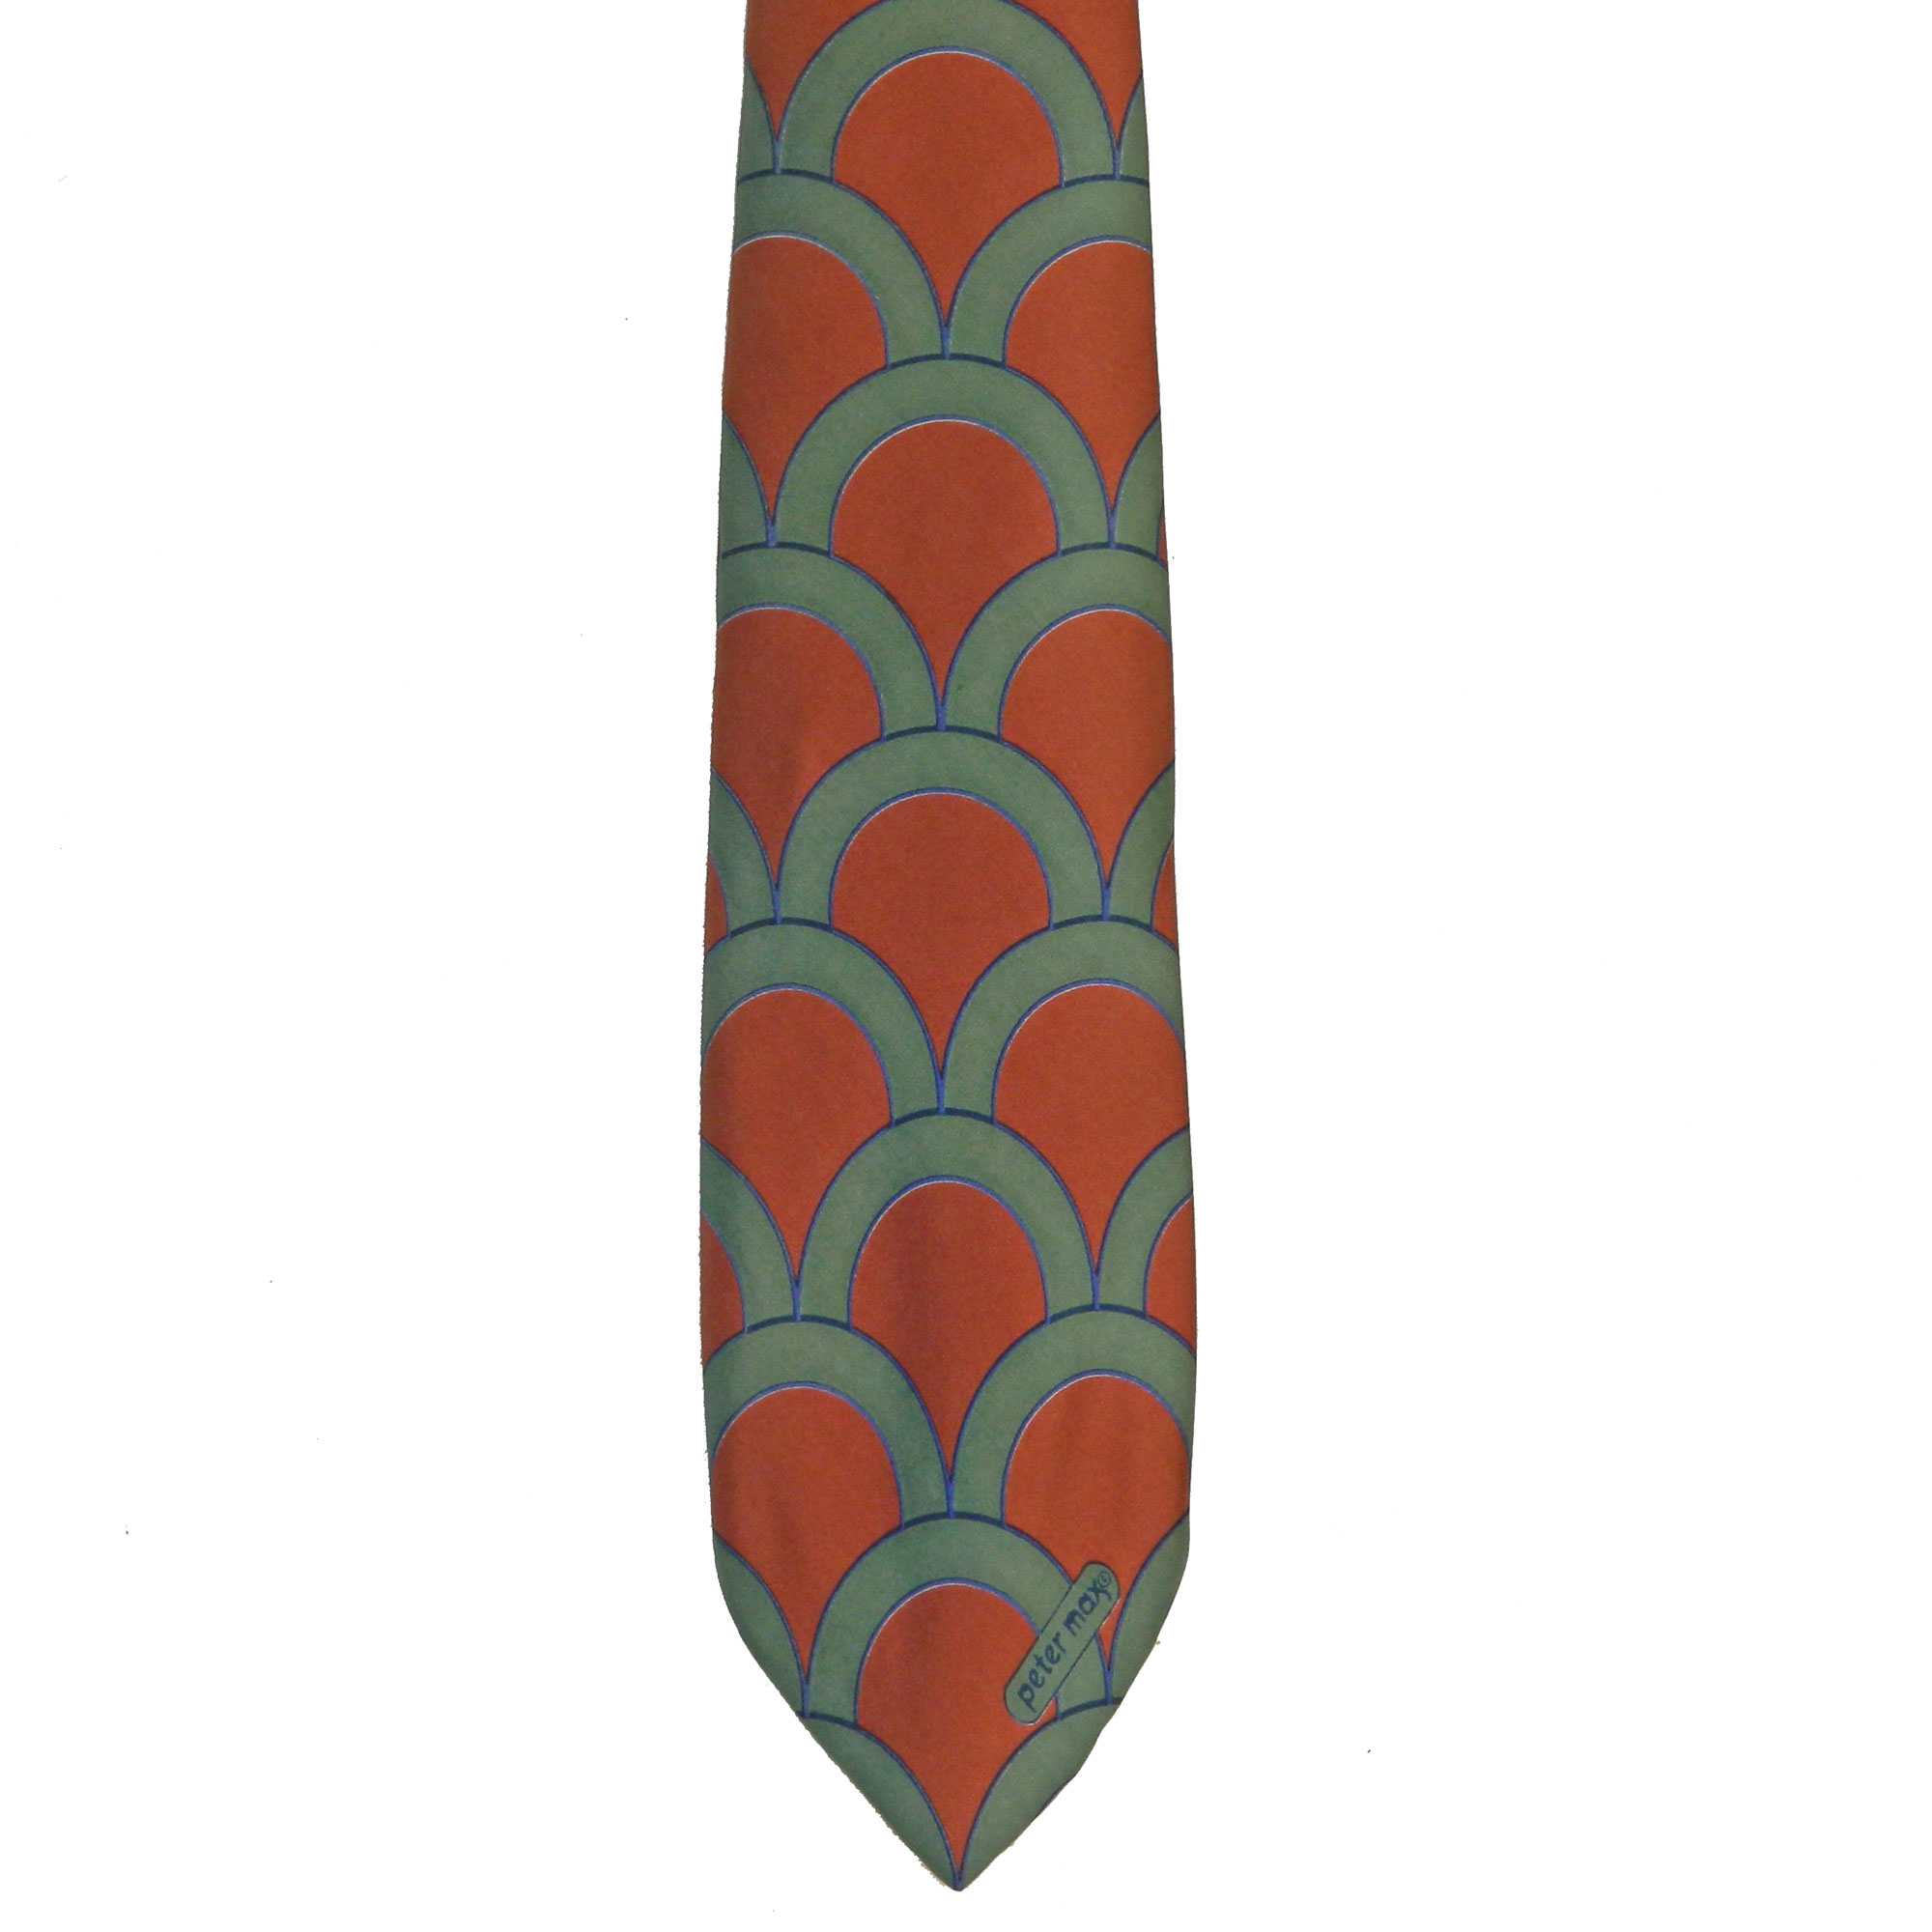 1970s Peter Max tie